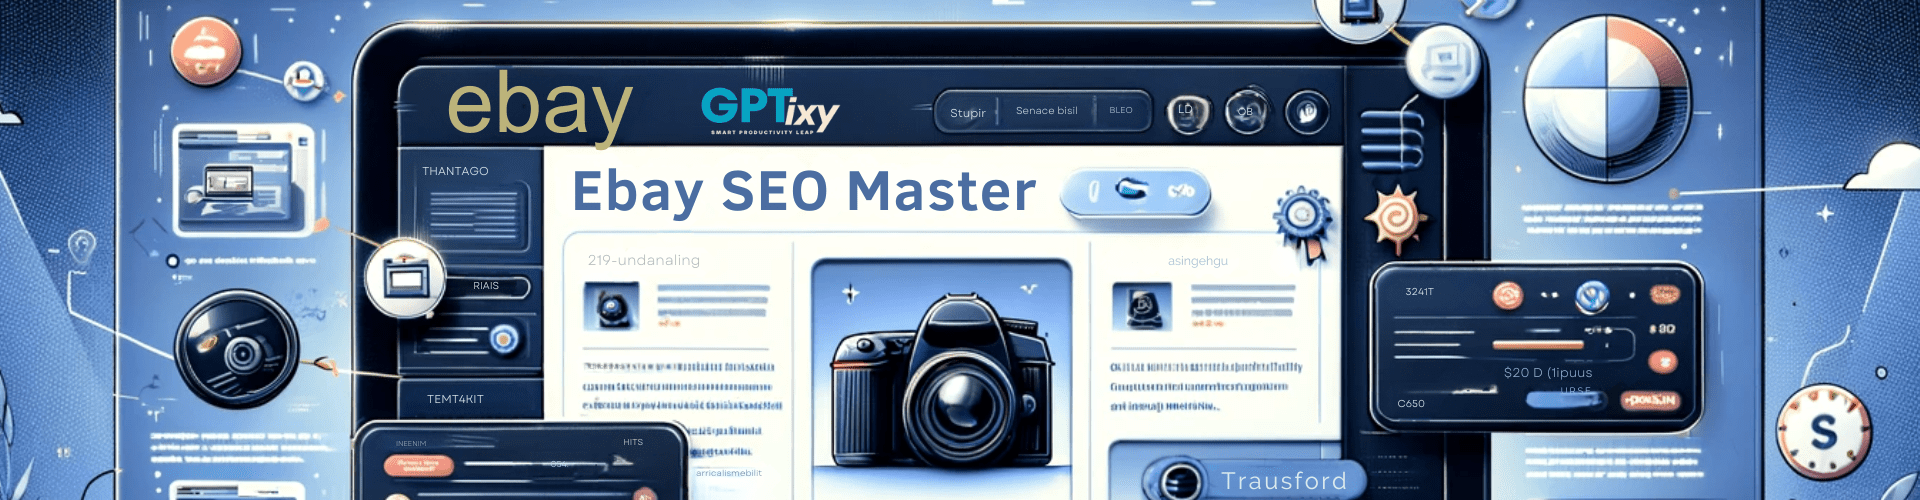 ebay SEO Master by gptixy.com